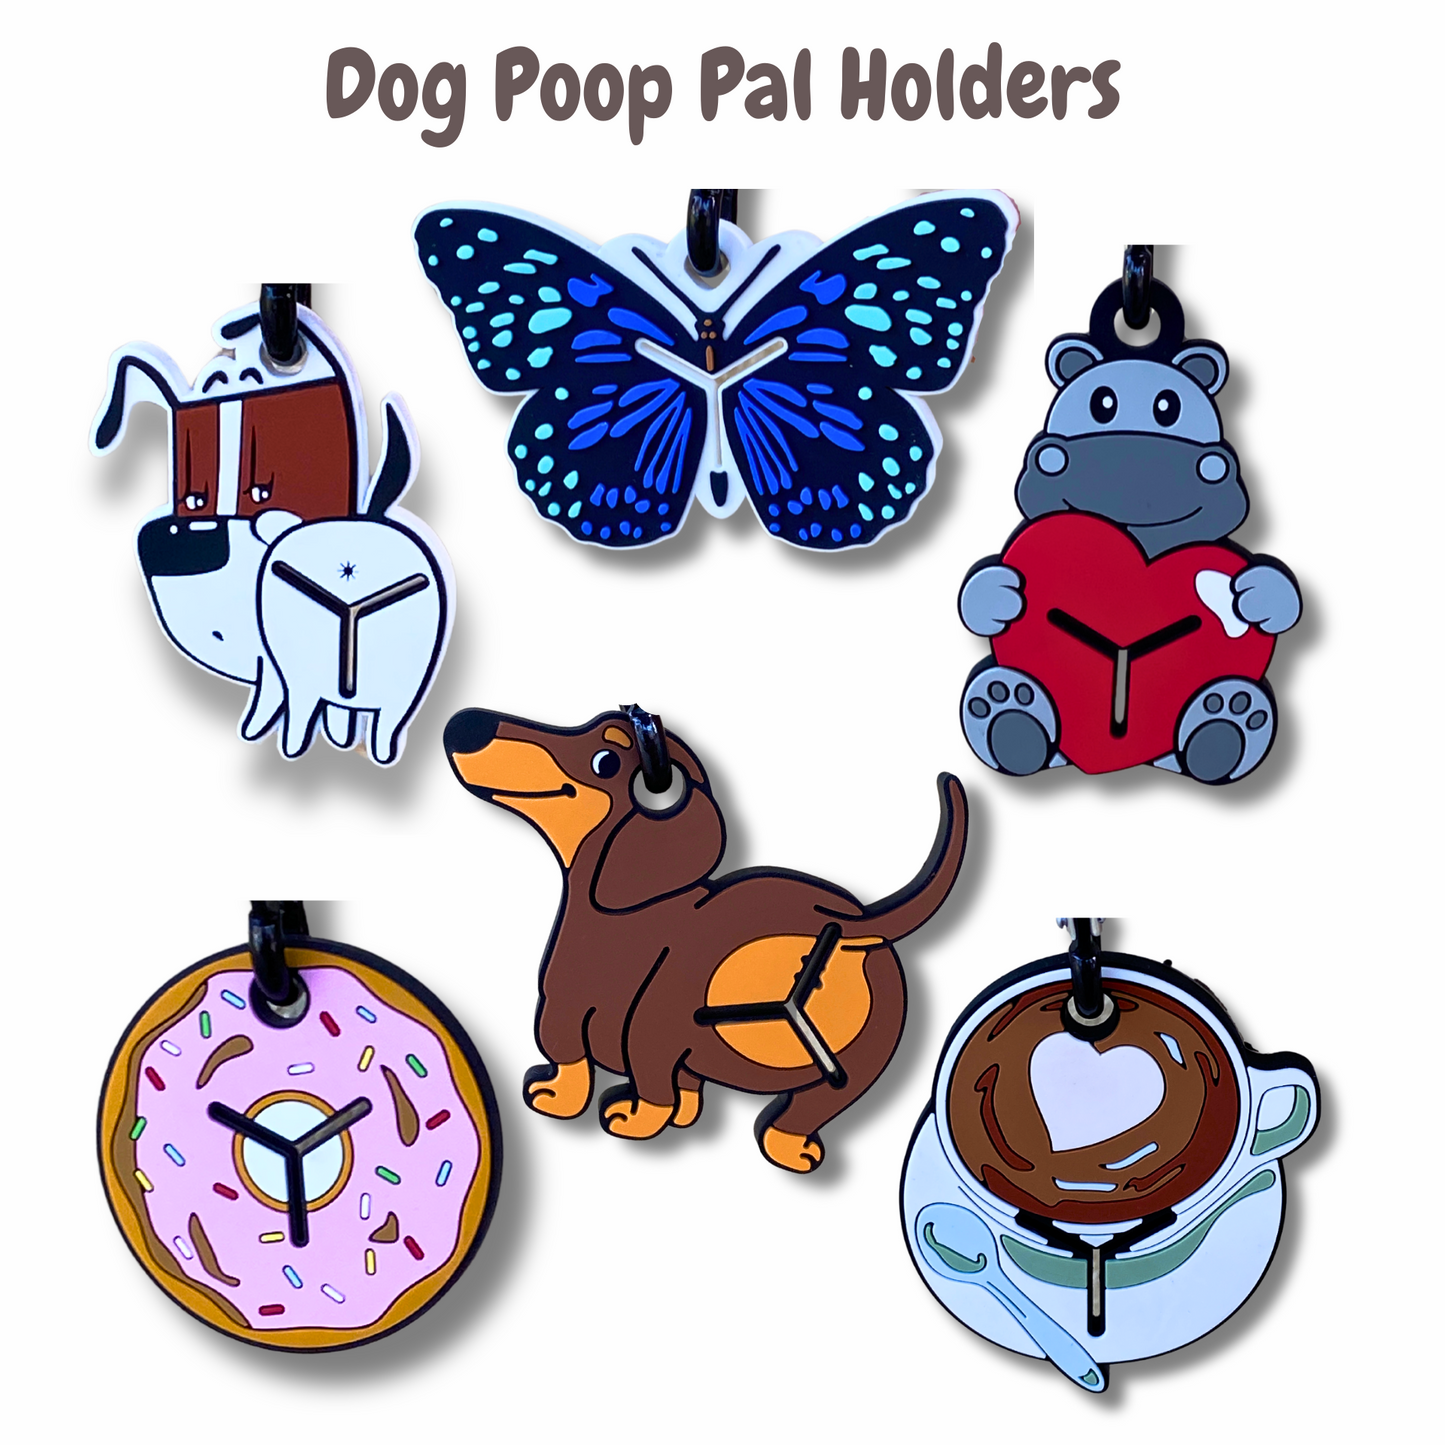 Donut dog poop bag holder, leash attachment, let's pawty 